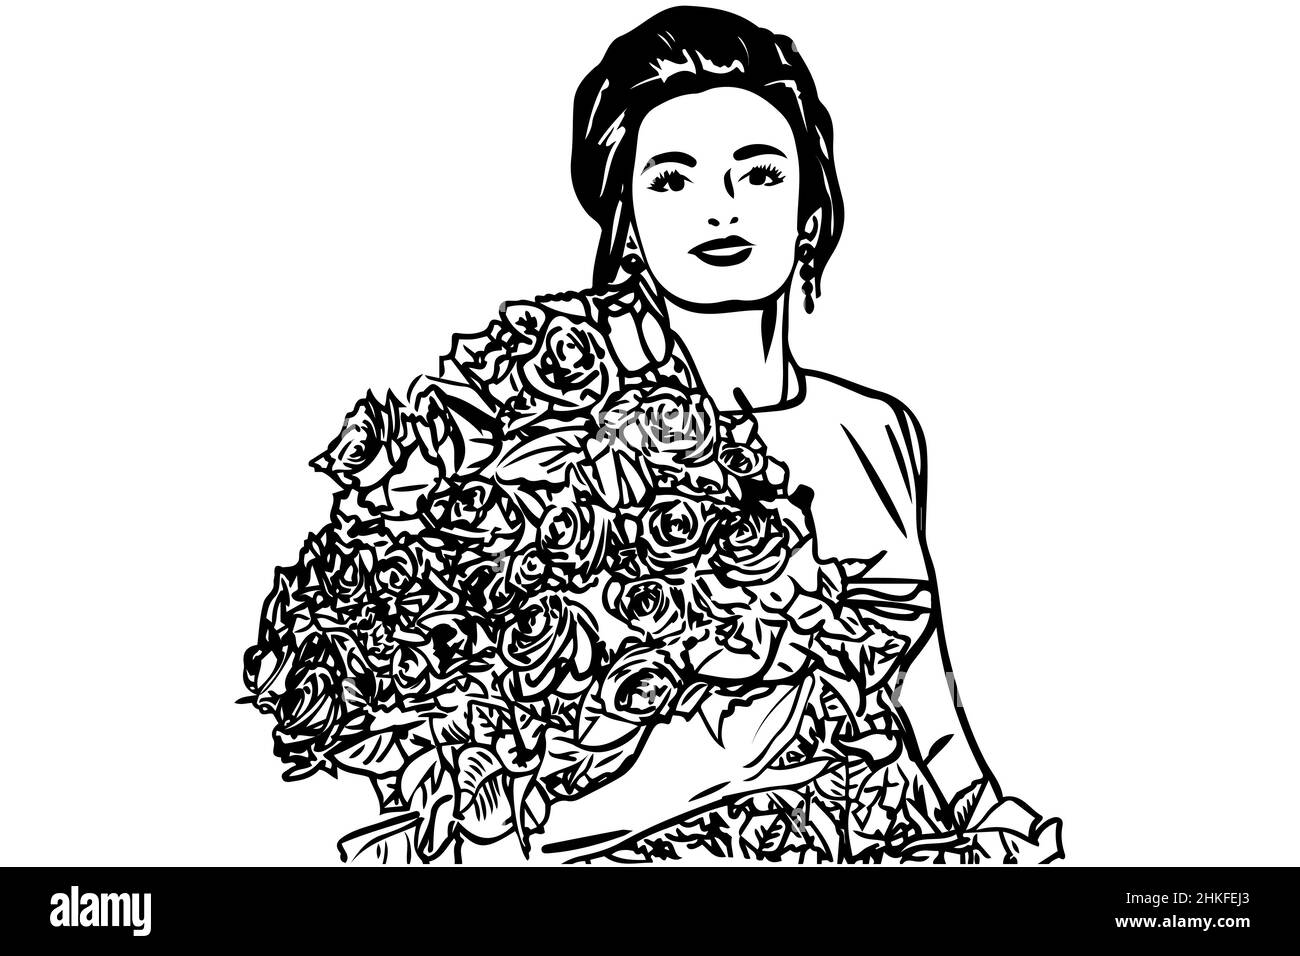 Schwarz-weiße Vektorskizze eines schönen Mädchens mit einem Strauß Rosen Stockfoto